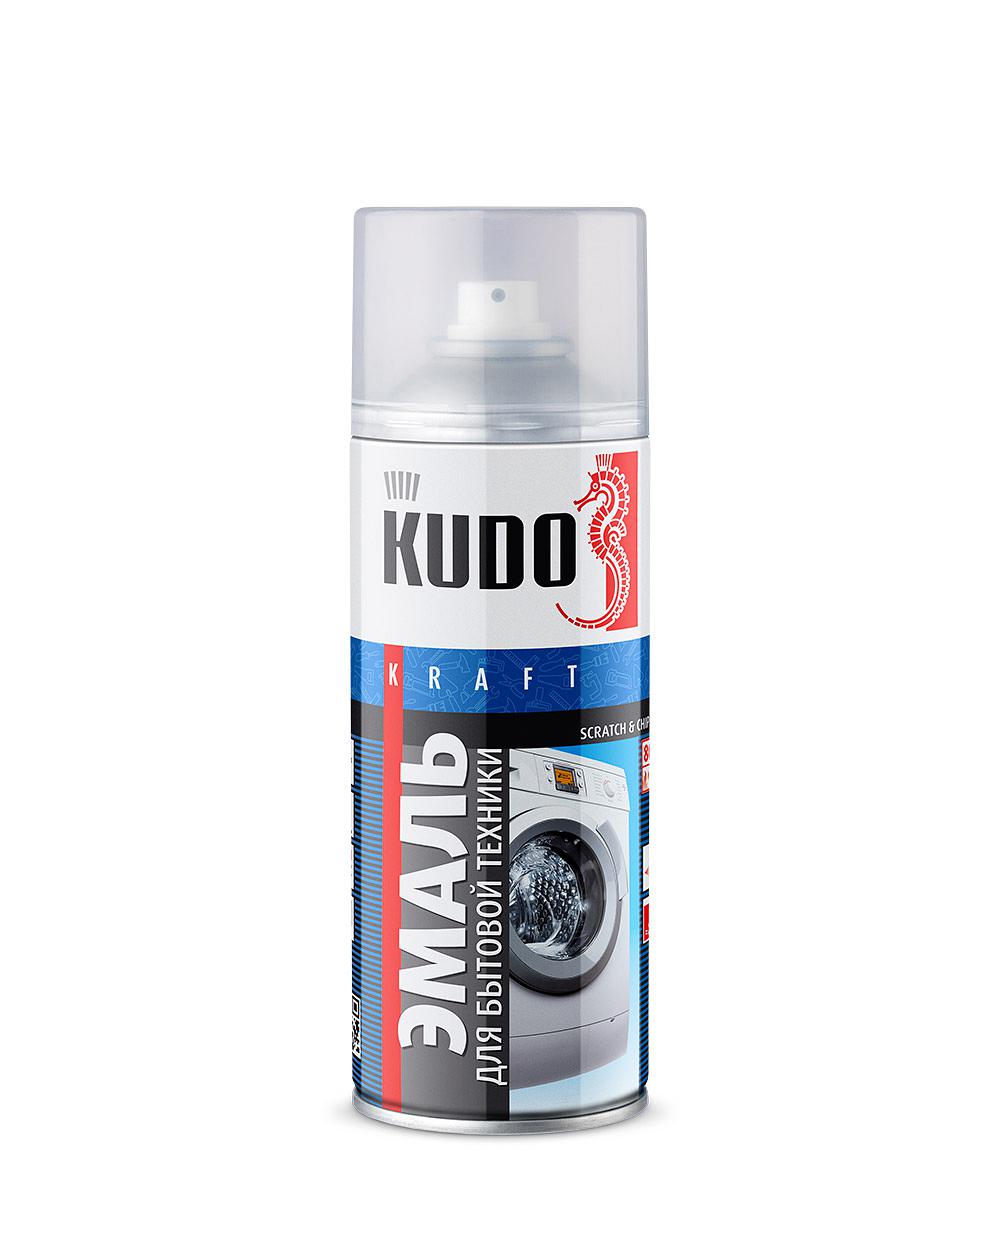 Эмаль для бытовой техники "KUDO", белая, спрей, 520мл